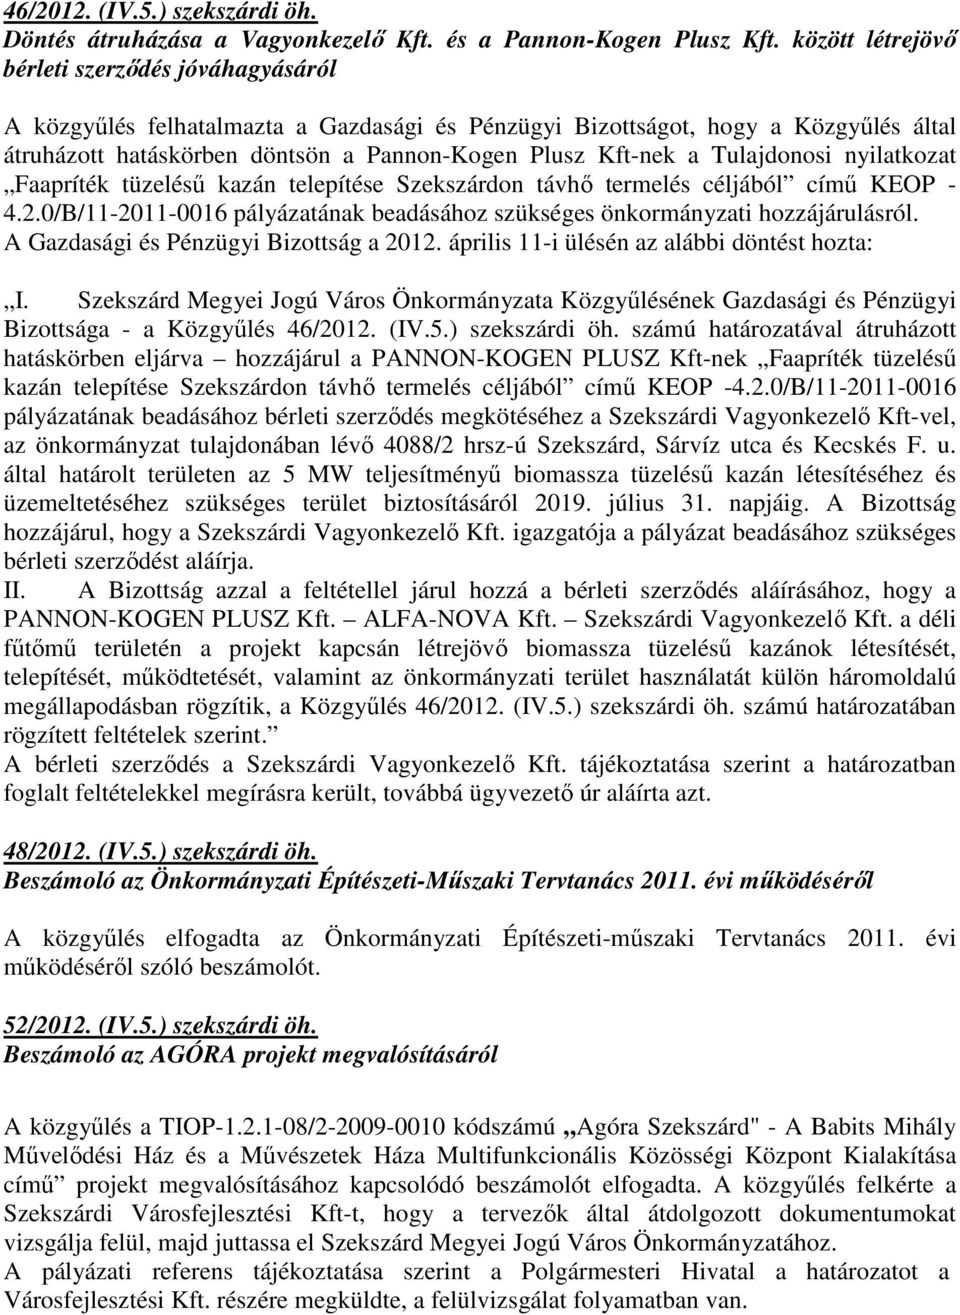 Tulajdonosi nyilatkozat Faapríték tüzeléső kazán telepítése Szekszárdon távhı termelés céljából címő KEOP - 4.2.0/B/11-2011-0016 pályázatának beadásához szükséges önkormányzati hozzájárulásról.